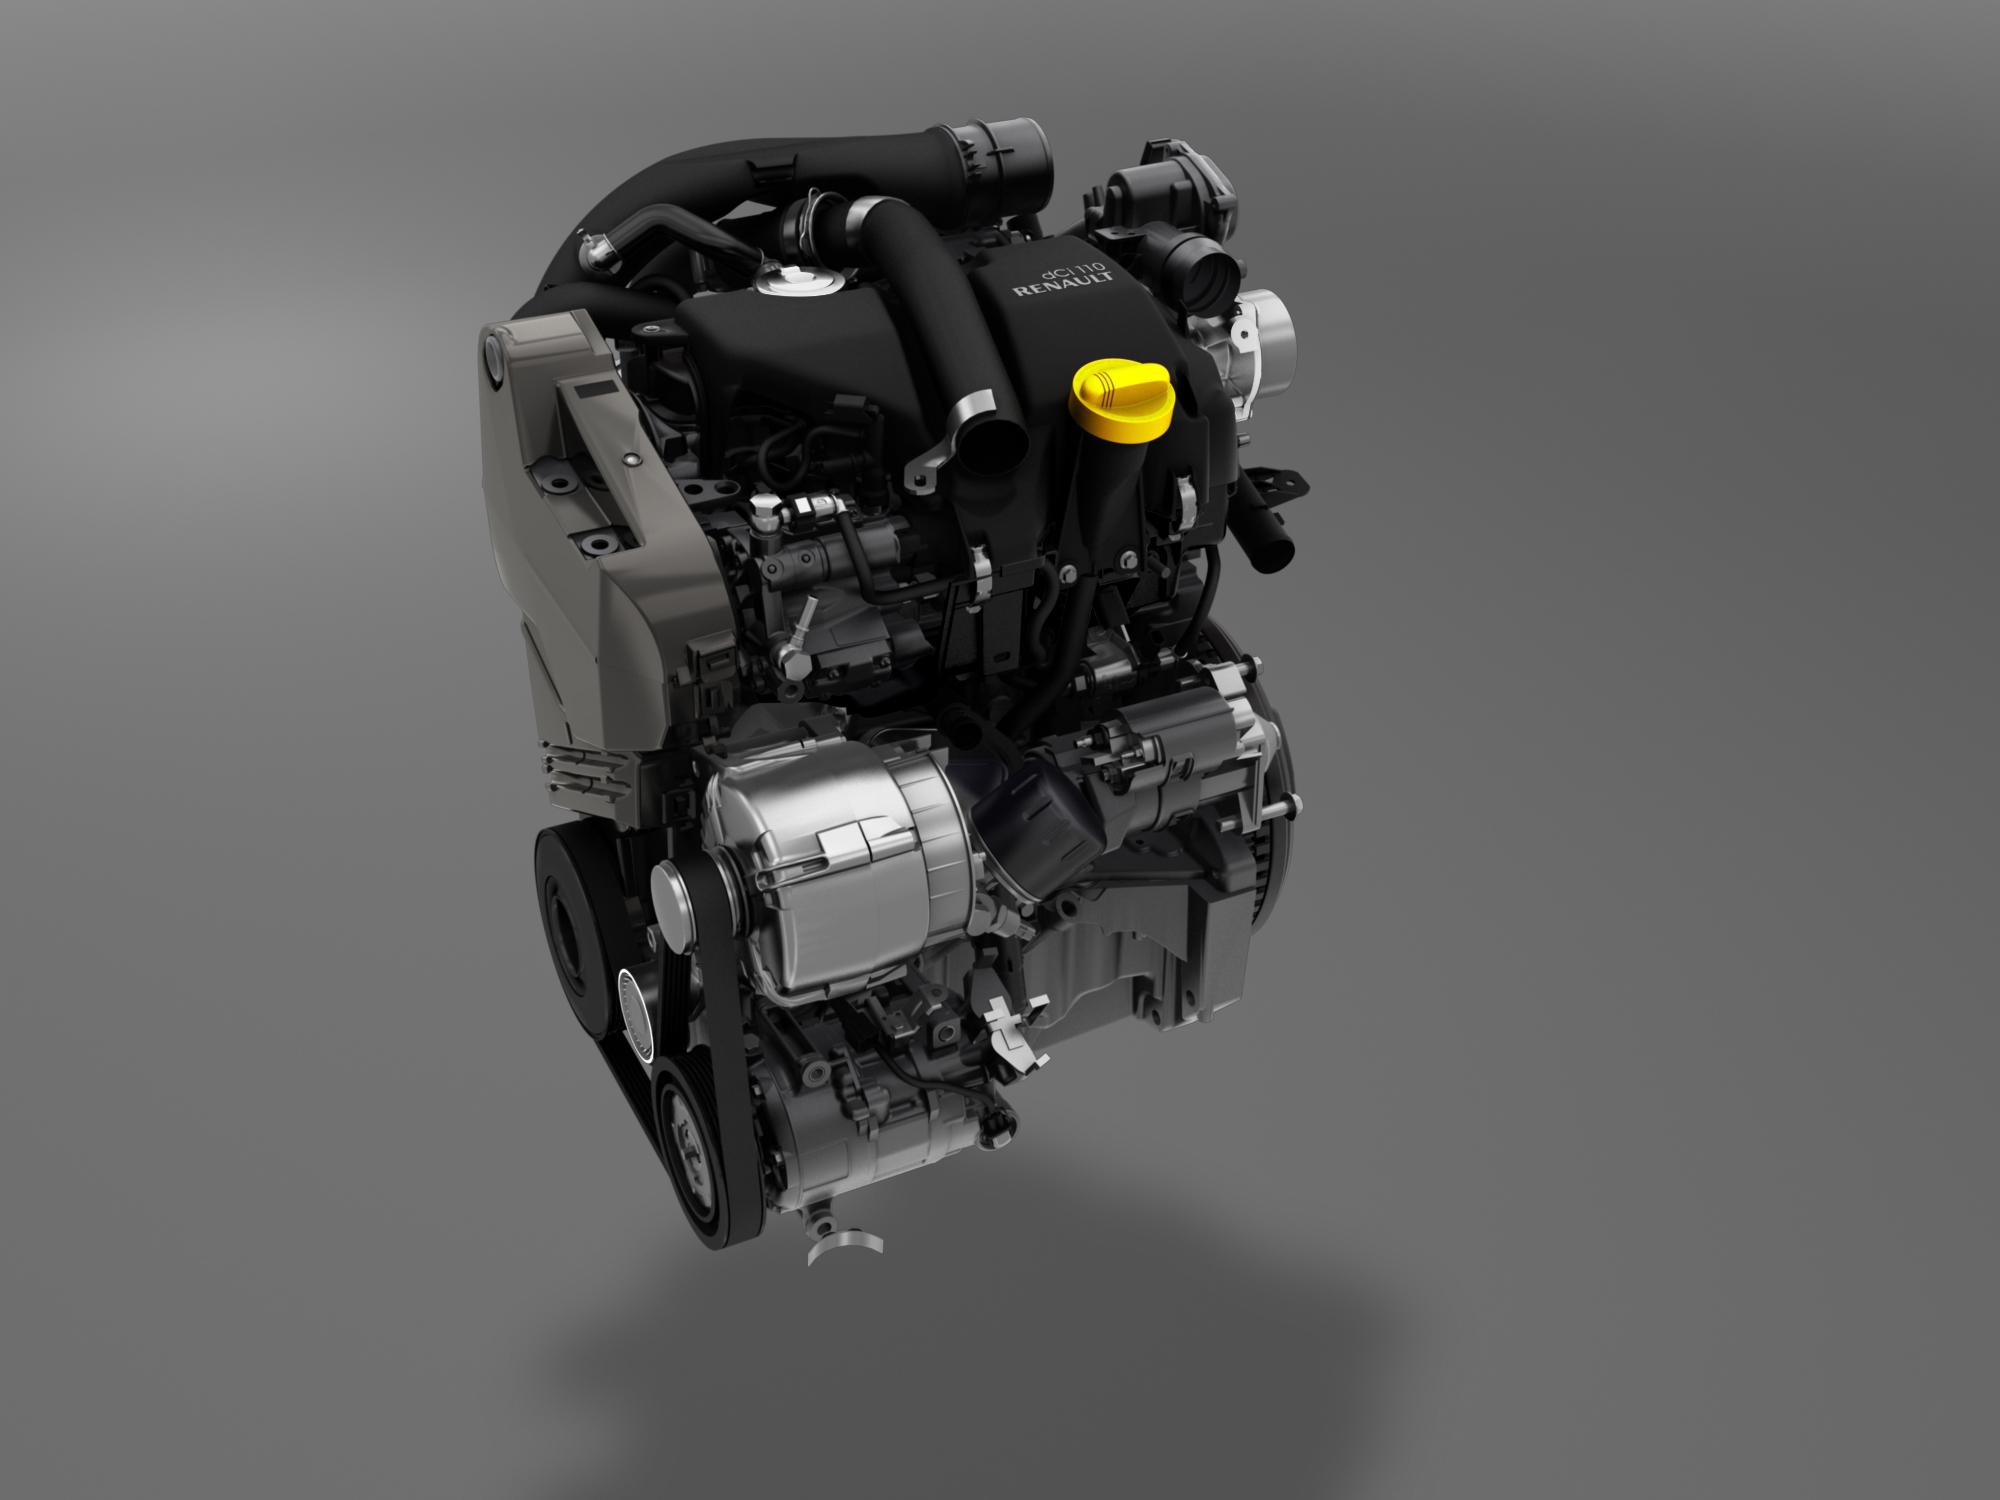 Дизельные renault. Рено Дастер дизель двигатель к9к. Двигатель нового поколения. Дизельный двигатель объемом 1.6л. Ресурс двигателя 140сс.